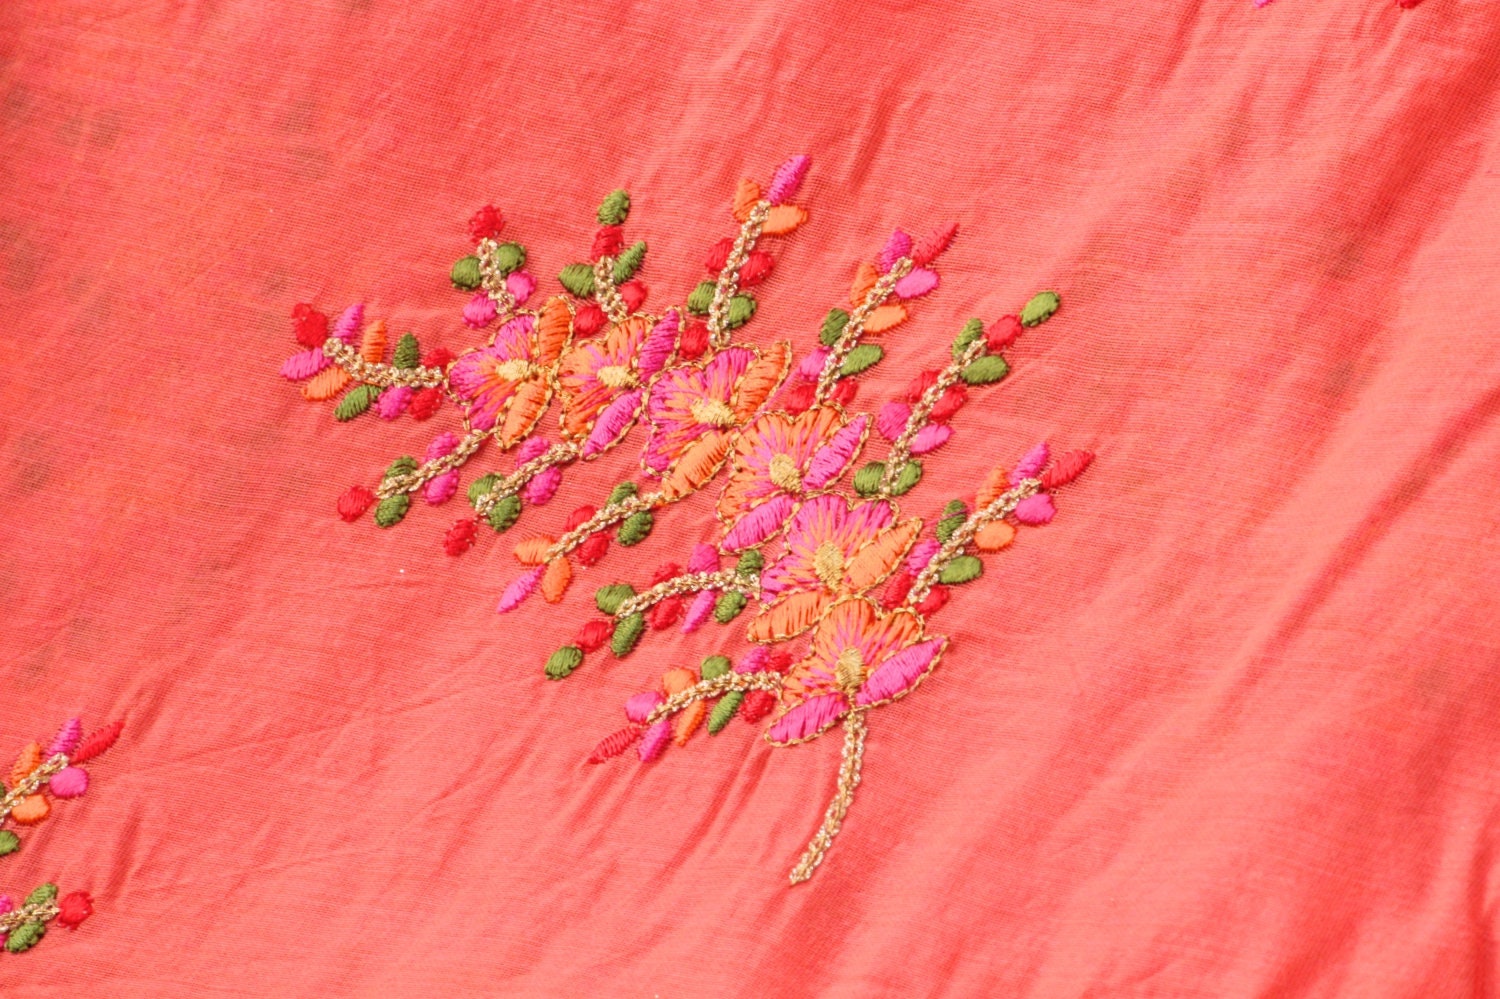 Indian Sari Fabric